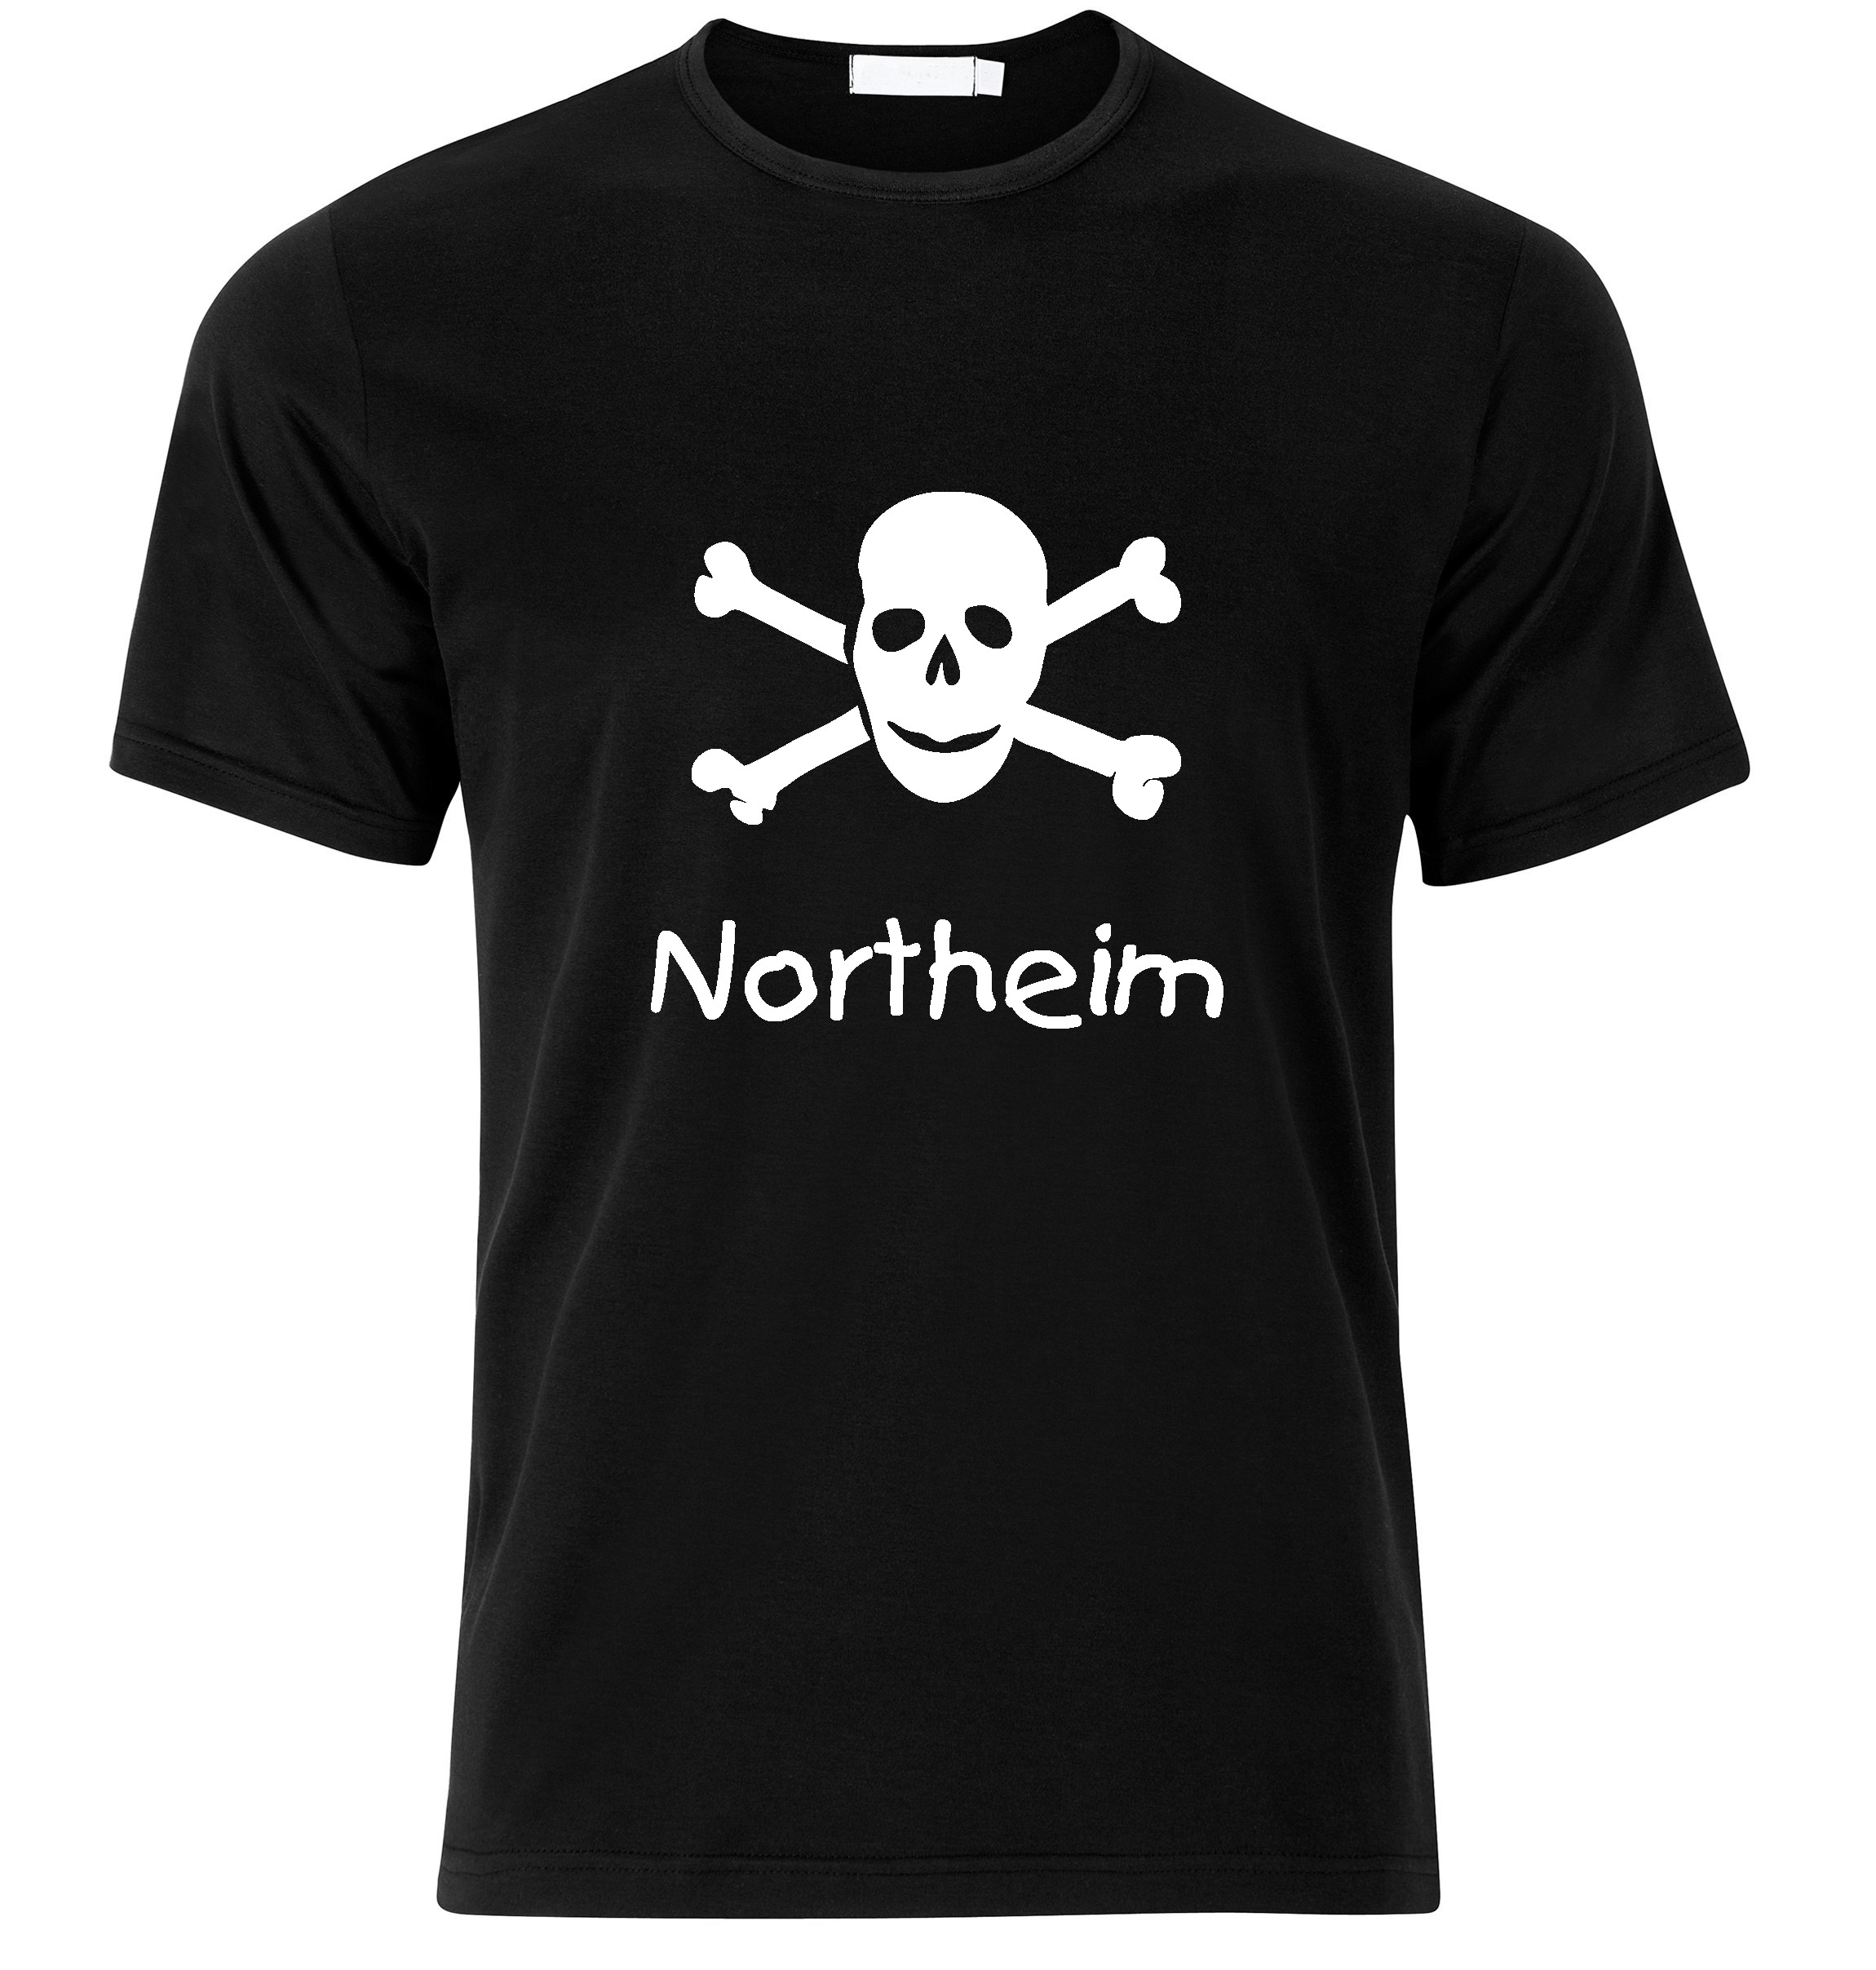 T-Shirt Northeim Jolly Roger, Totenkopf